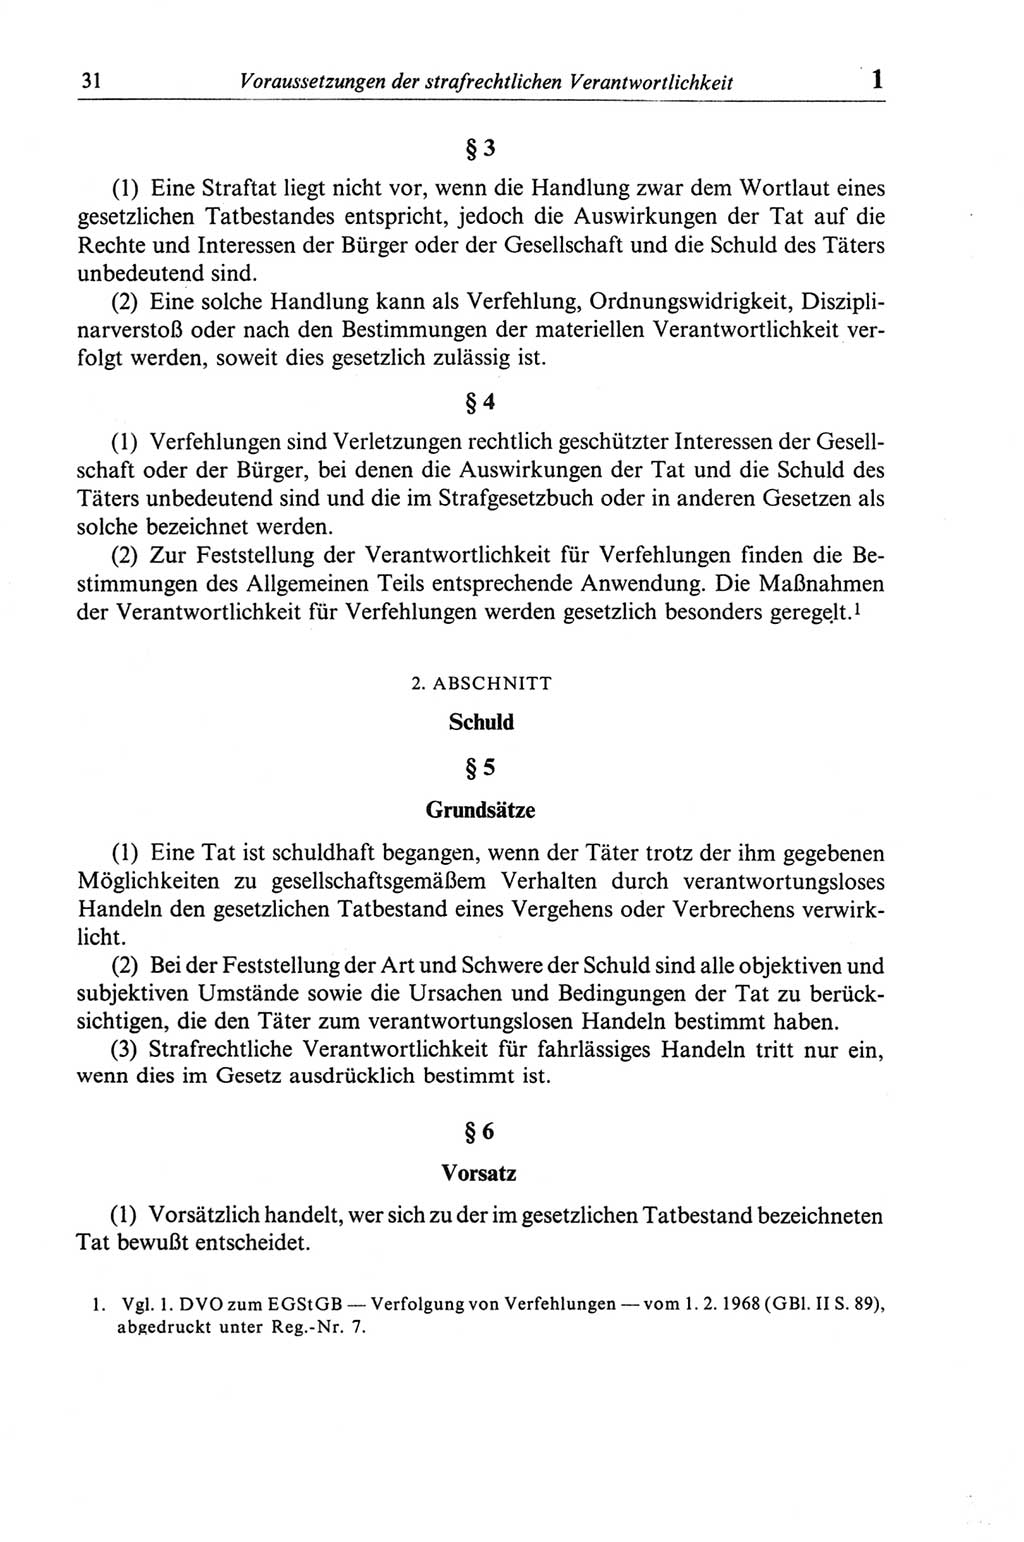 Strafgesetzbuch (StGB) der Deutschen Demokratischen Republik (DDR) und angrenzende Gesetze und Bestimmungen 1968, Seite 31 (StGB Ges. Best. DDR 1968, S. 31)